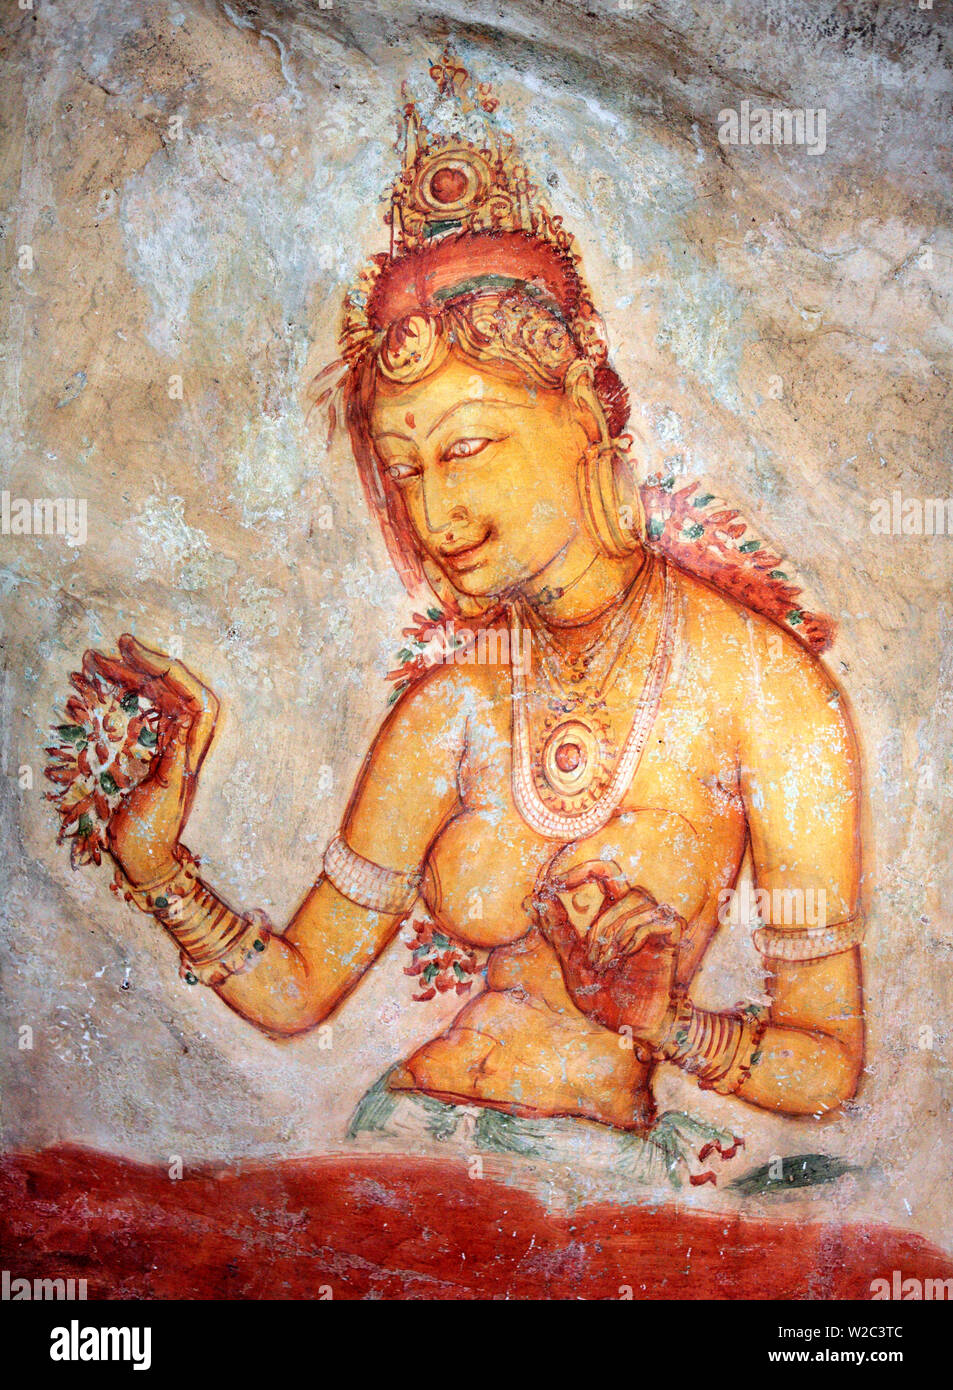 La peinture murale (6e siècle), Sigiriya, Sri Lanka Banque D'Images